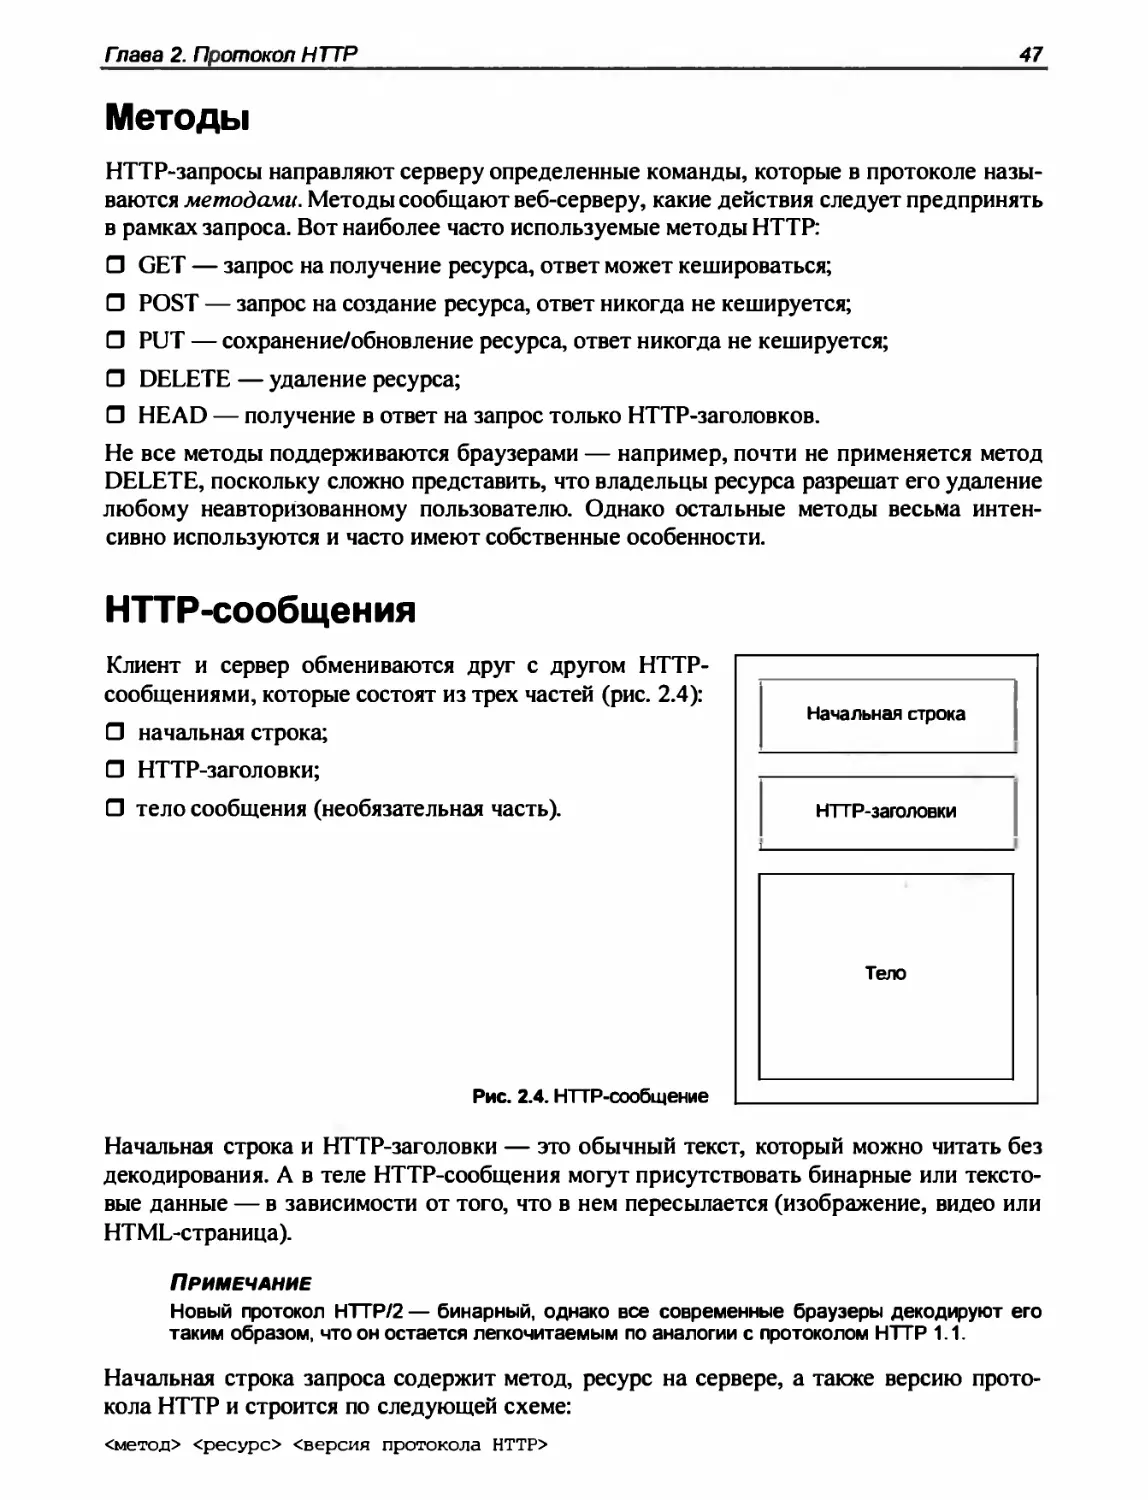 Методы
HTTP-сообщения